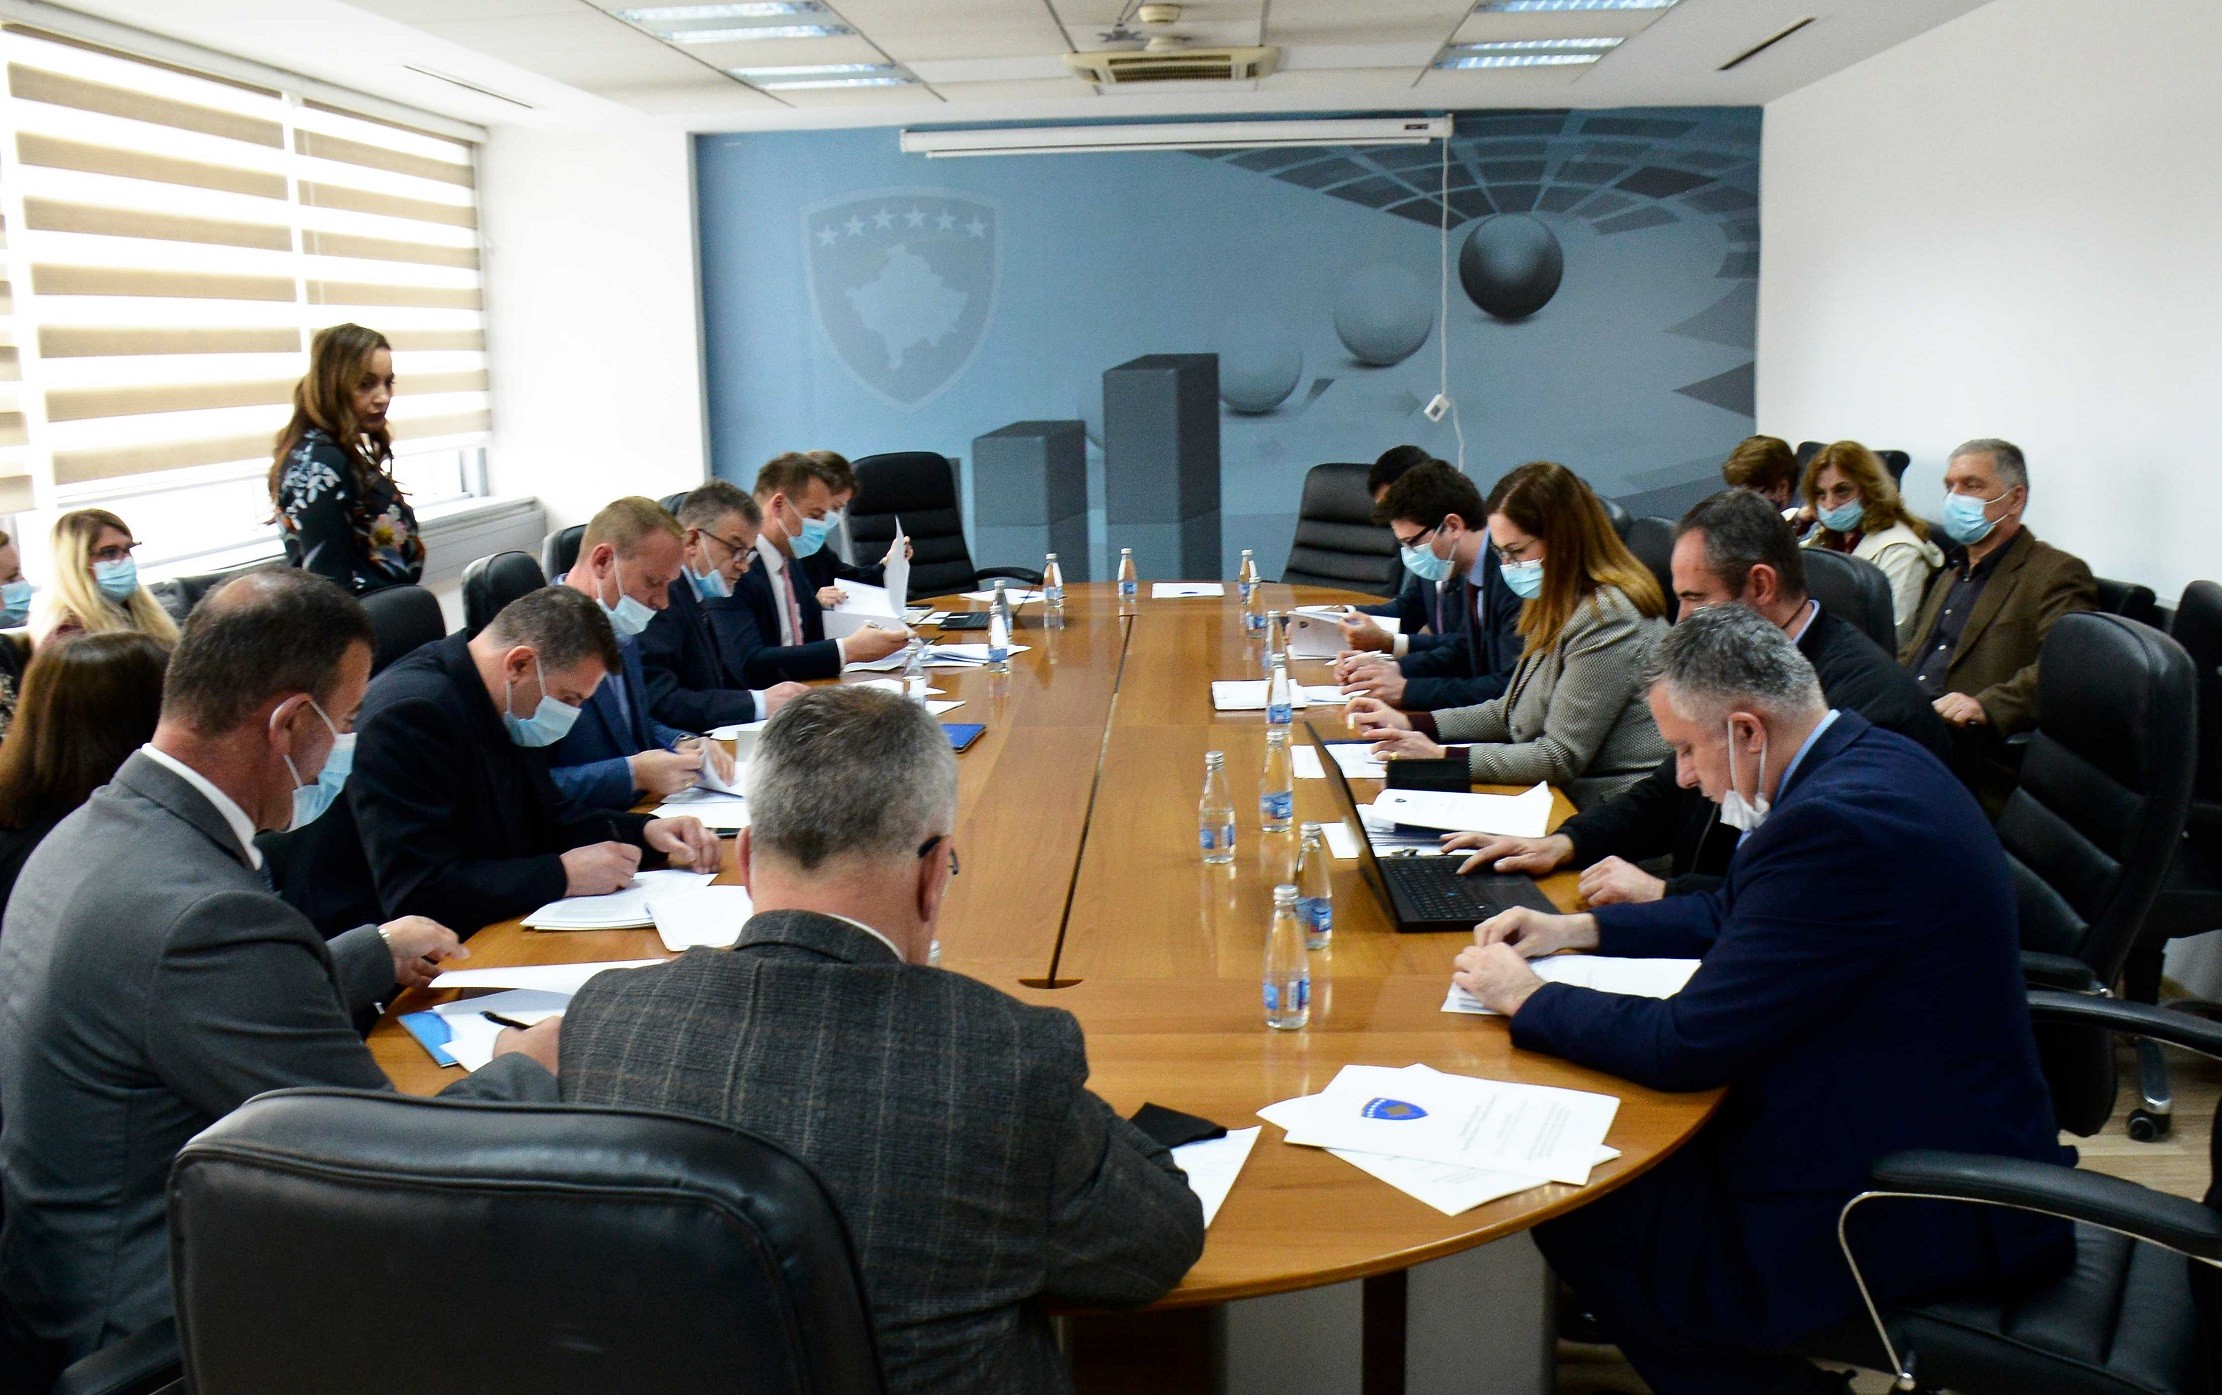 Mbahet takimi i Komisionit të Granteve i udhëhequr nga Ministri Murati